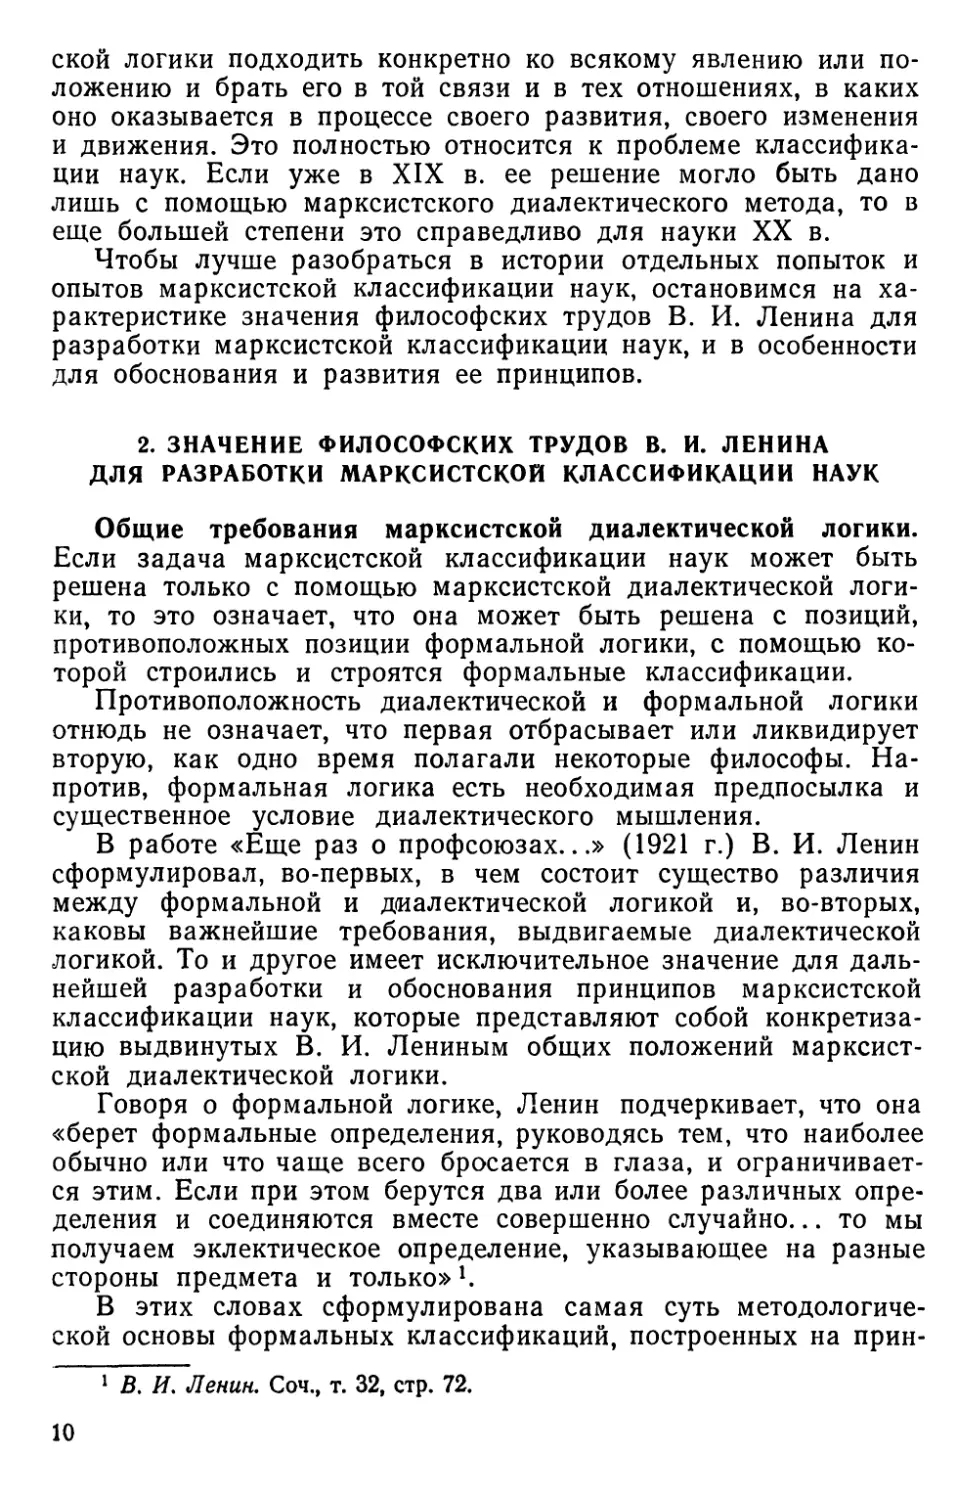 2. Значение философских трудов В. И. Ленина для разработки марксистской классификации наук